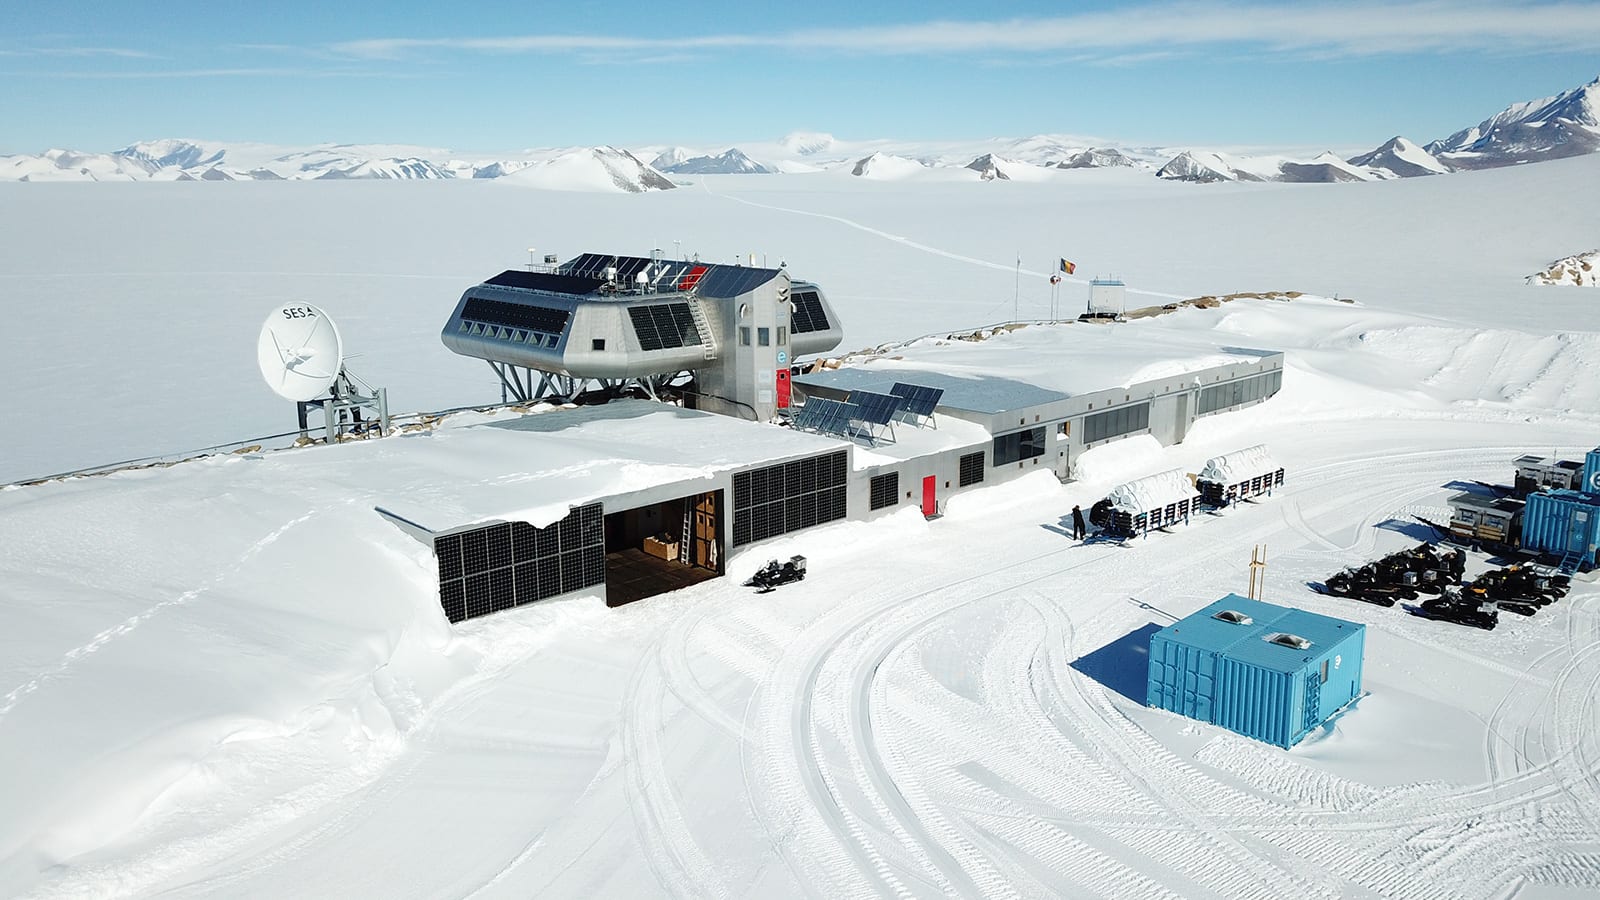 كاميرا "درون" ترصد انفصال كتلة جليدية بحجم لندن عن القارة القطبية الجنوبية